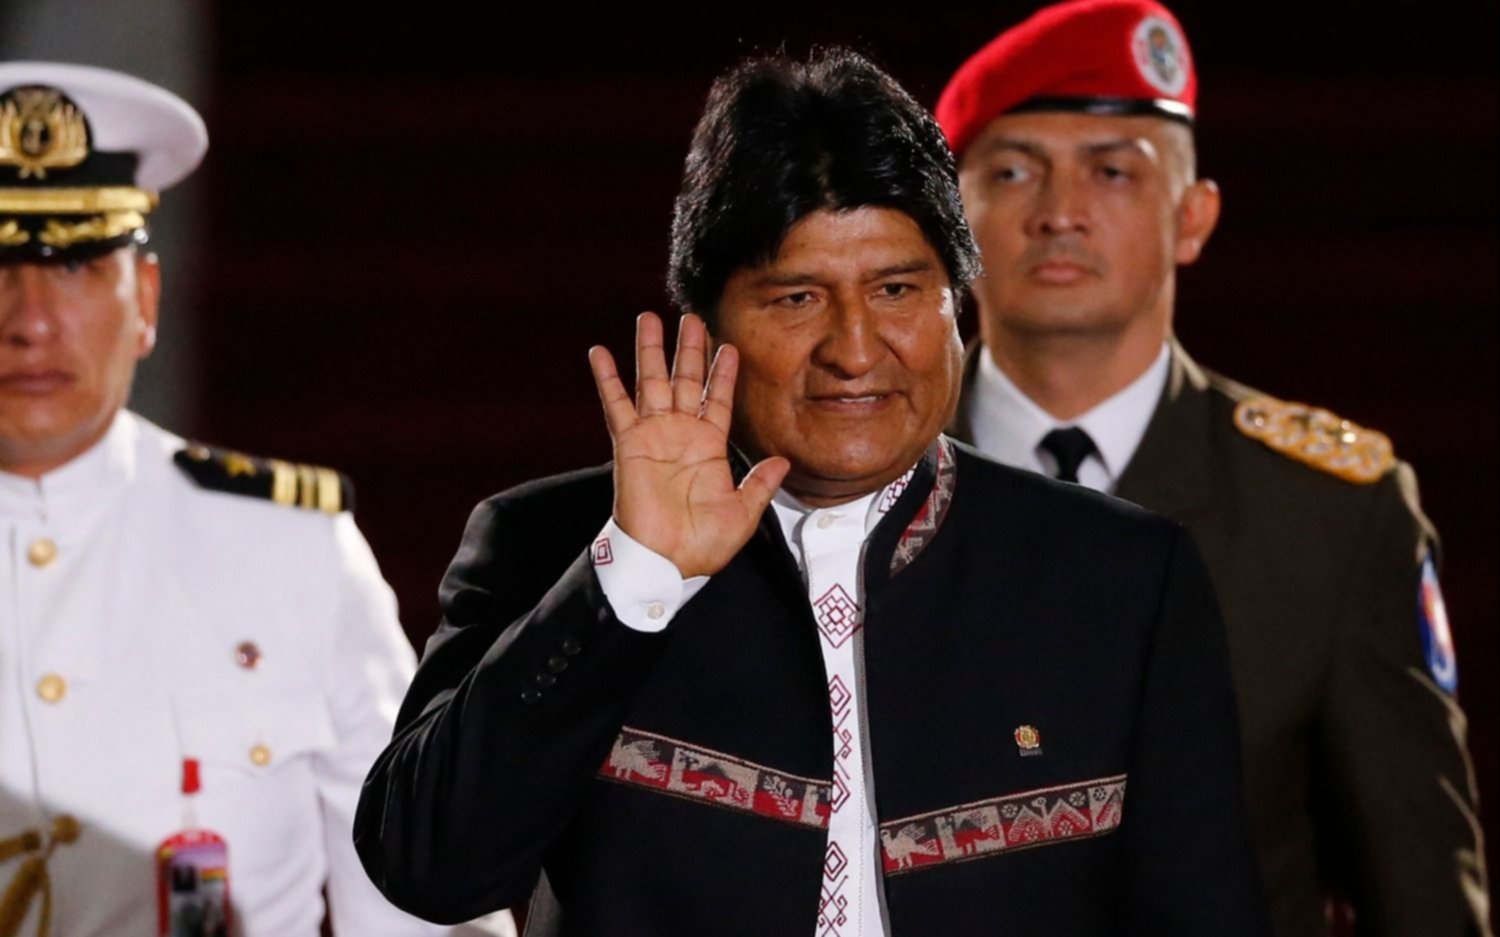 La presencia de Evo Morales en la asunción generó polémica en Bolivia